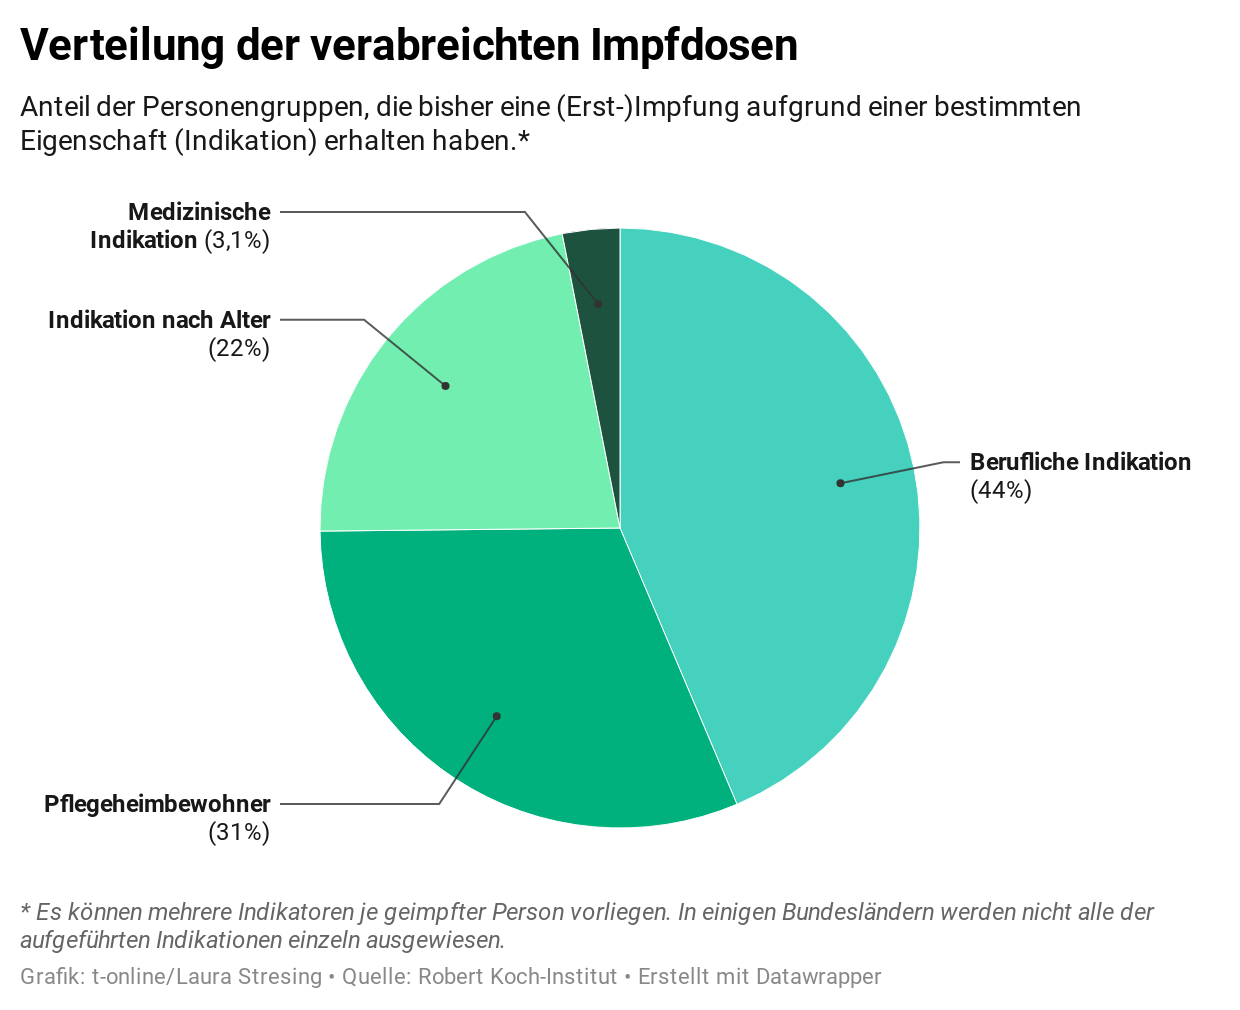 Die meisten Deutschen erhalten die Impfung bisher aufgrund ihres Jobs.